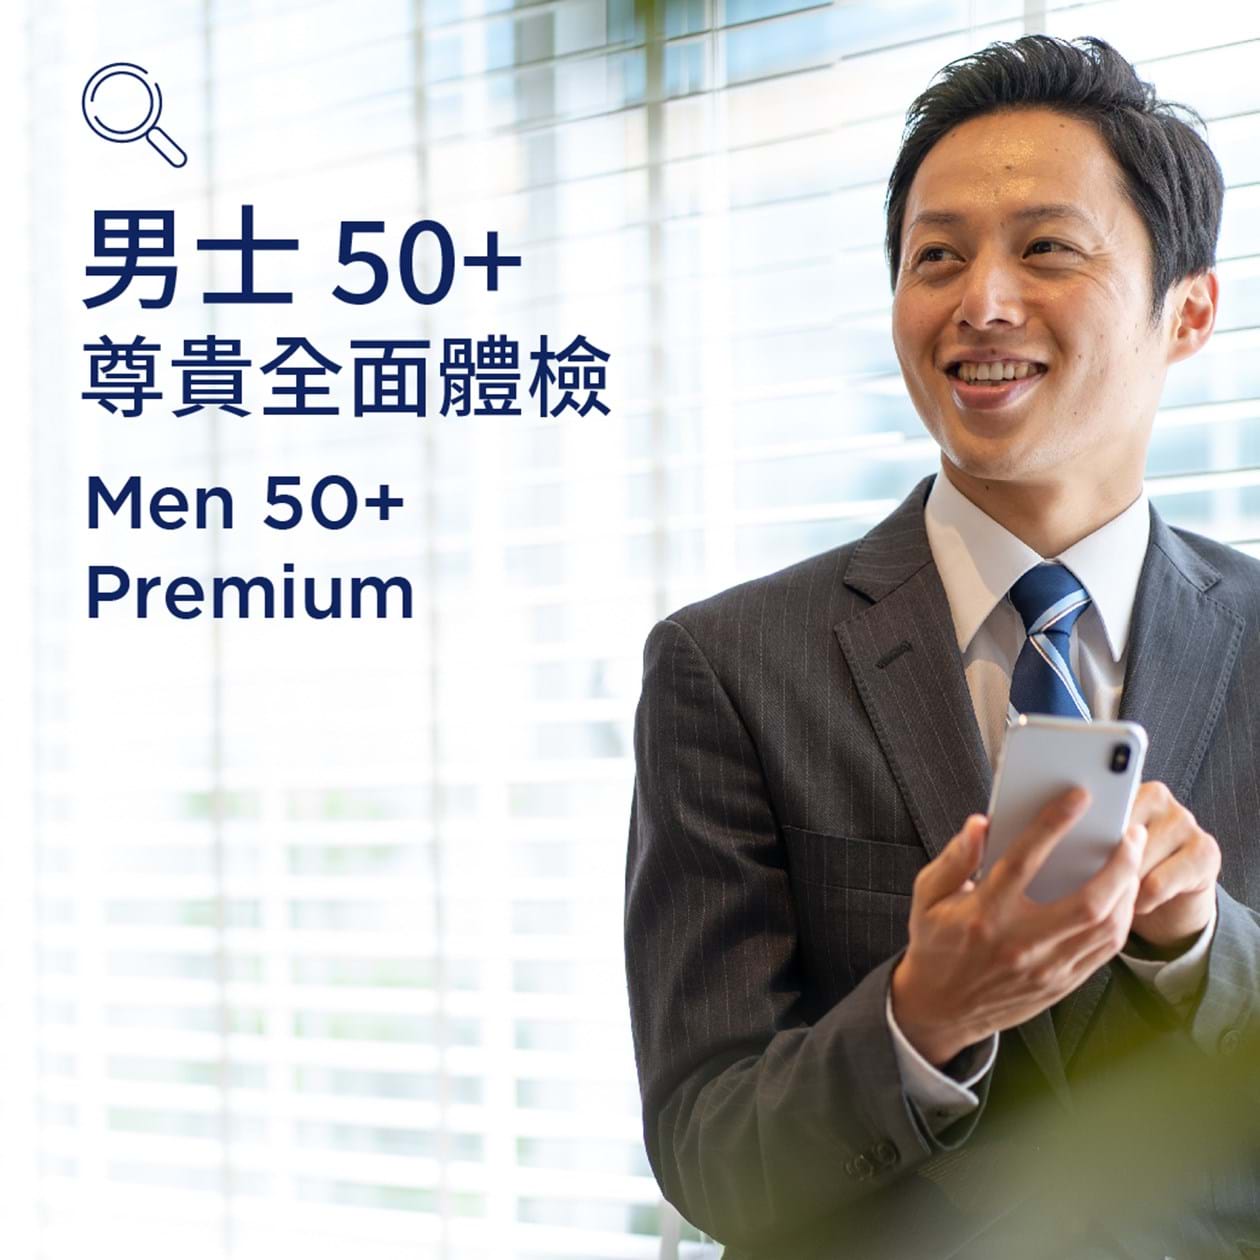 Men 50+ (Premium)